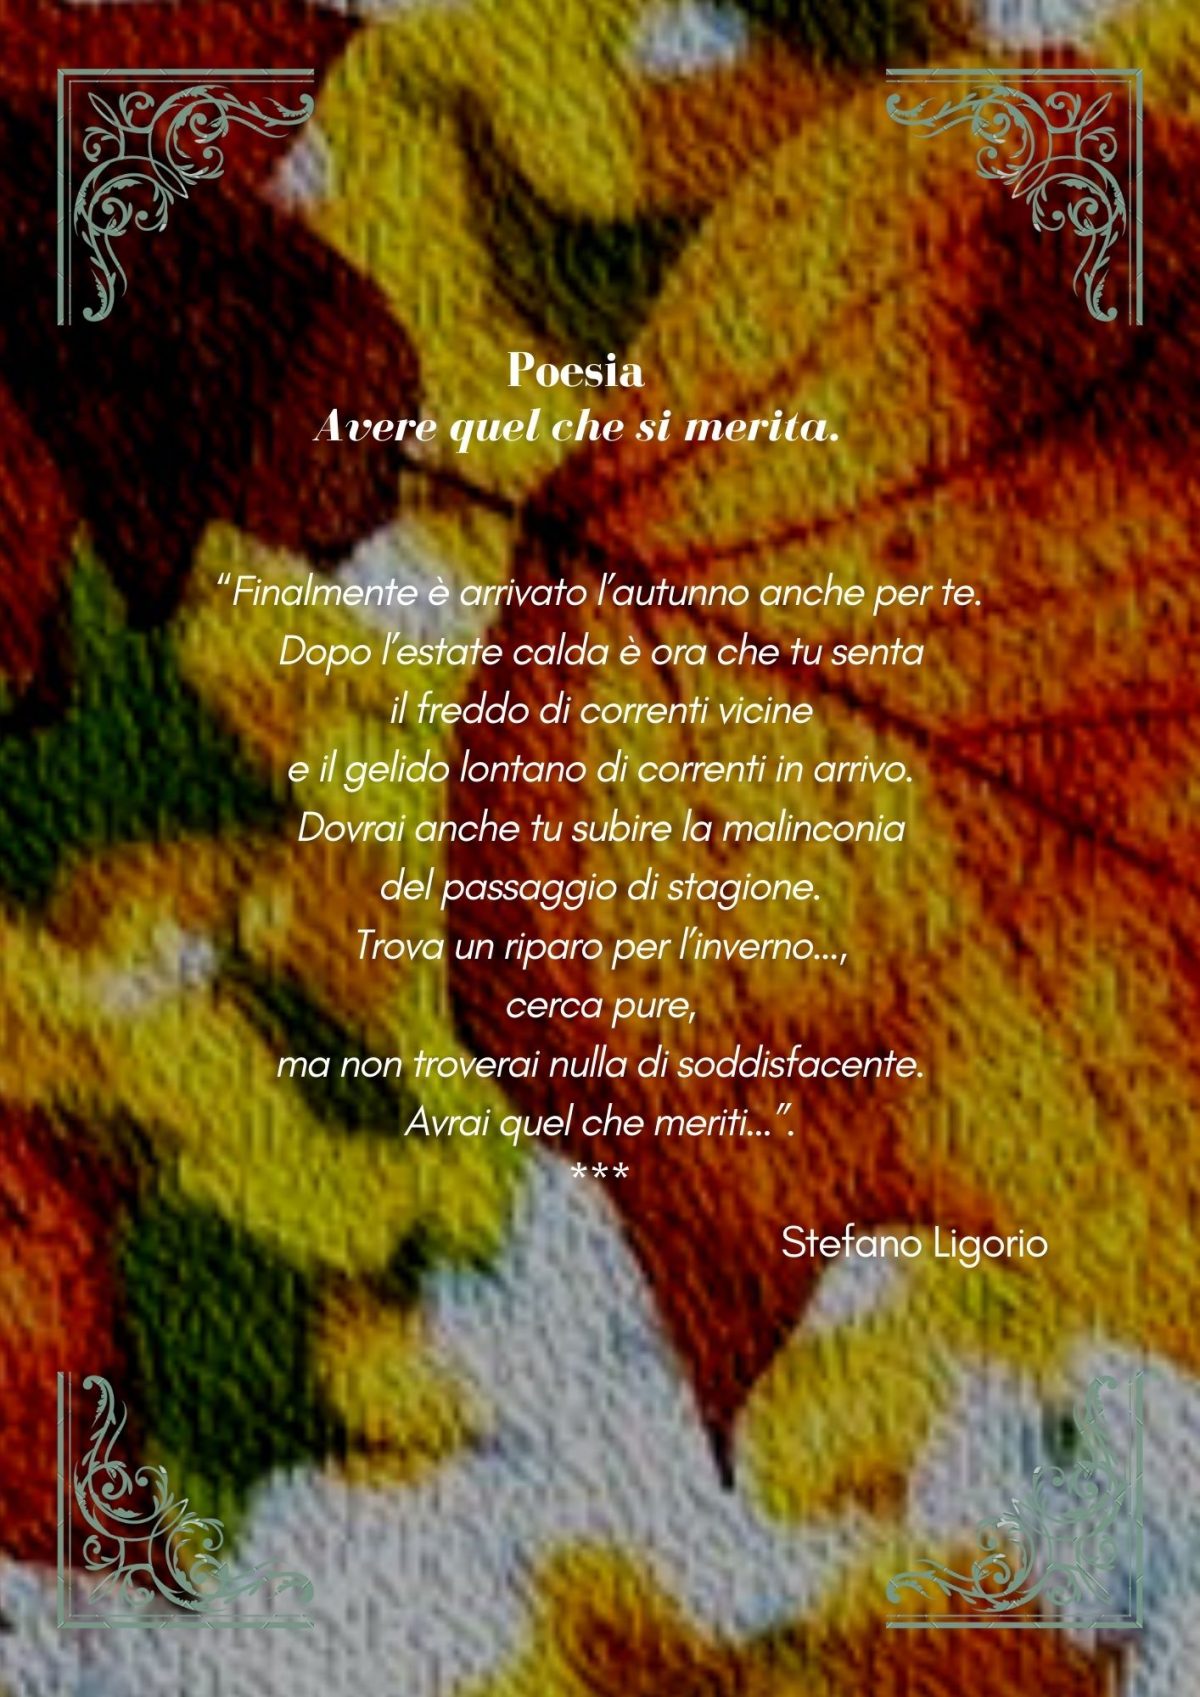 Alcune poesie non ‘brevi’, in formato immagine, di Stefano Ligorio.